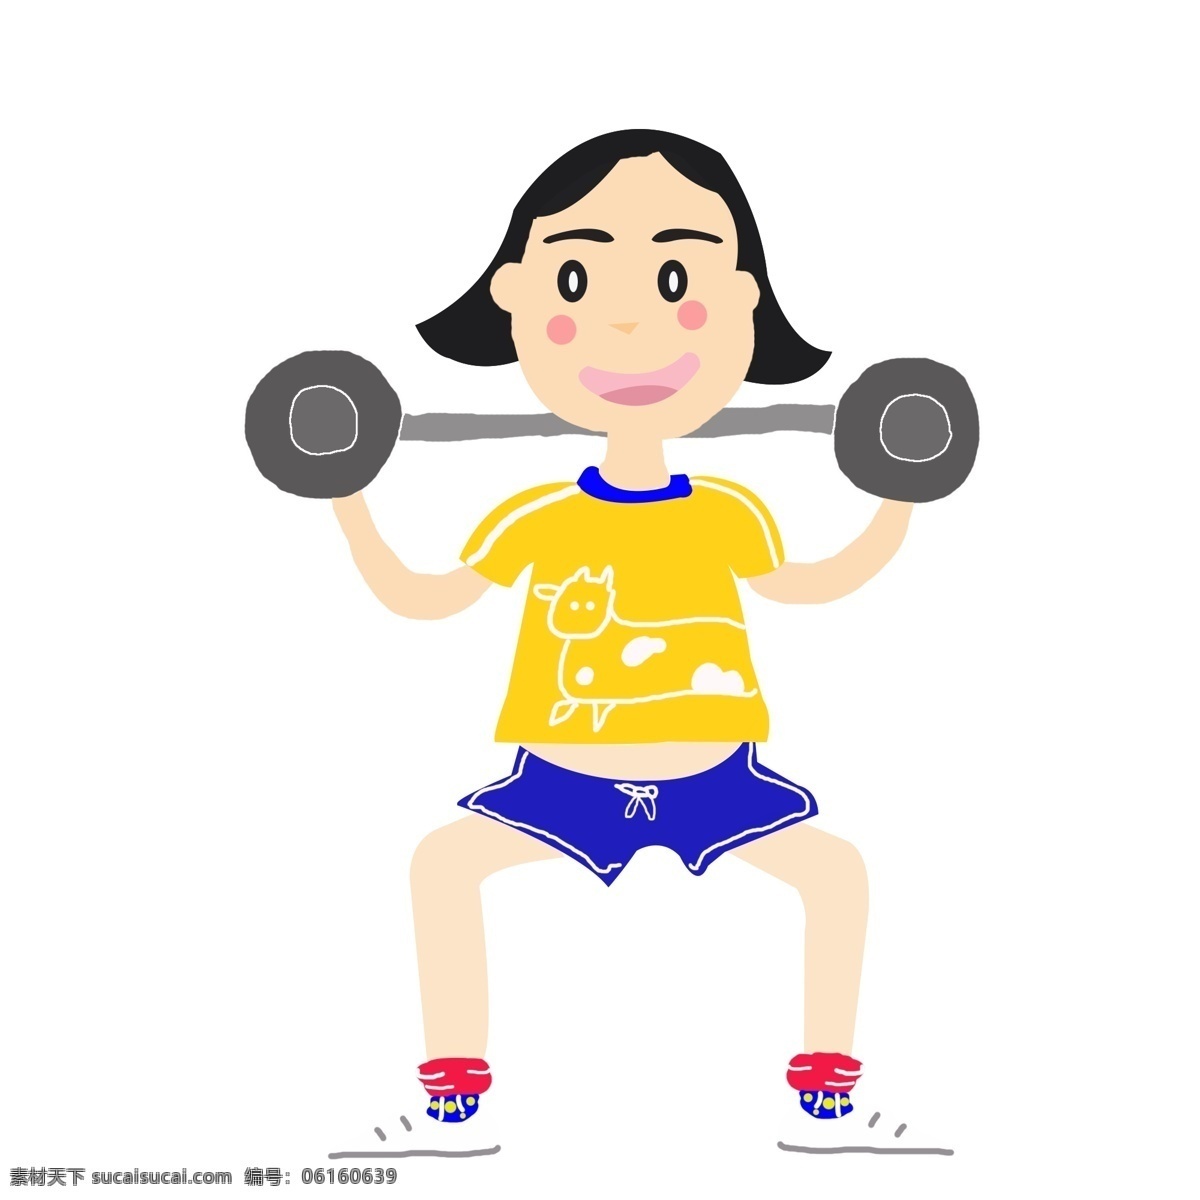 免 扣 运动 健身 元素 卡通健身 运动女孩 手绘女孩 原创健身人物 矢量健身 运动器材 免扣运动人物